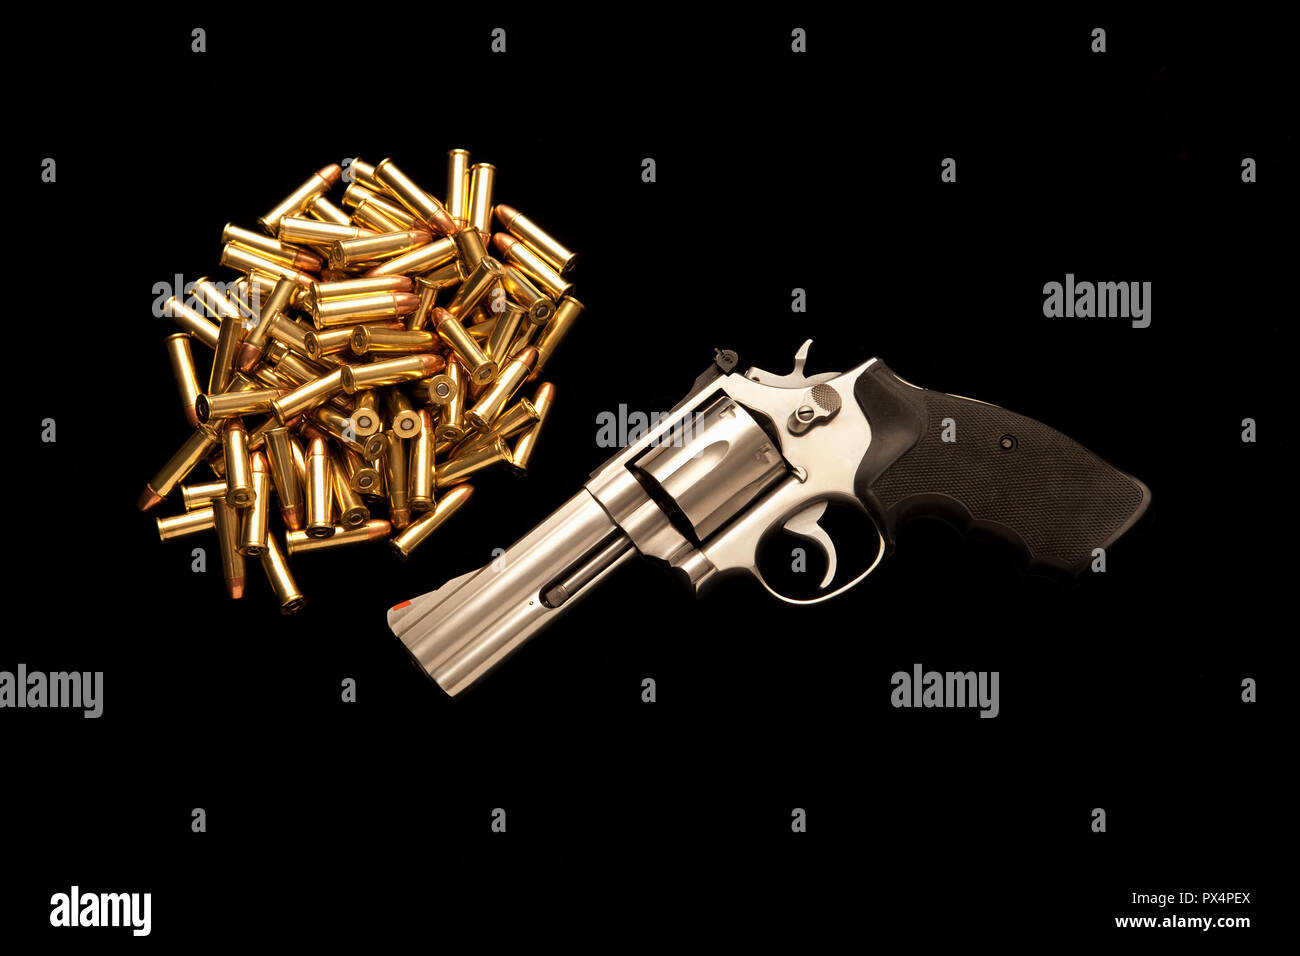 guns and ammunition Stock Photo